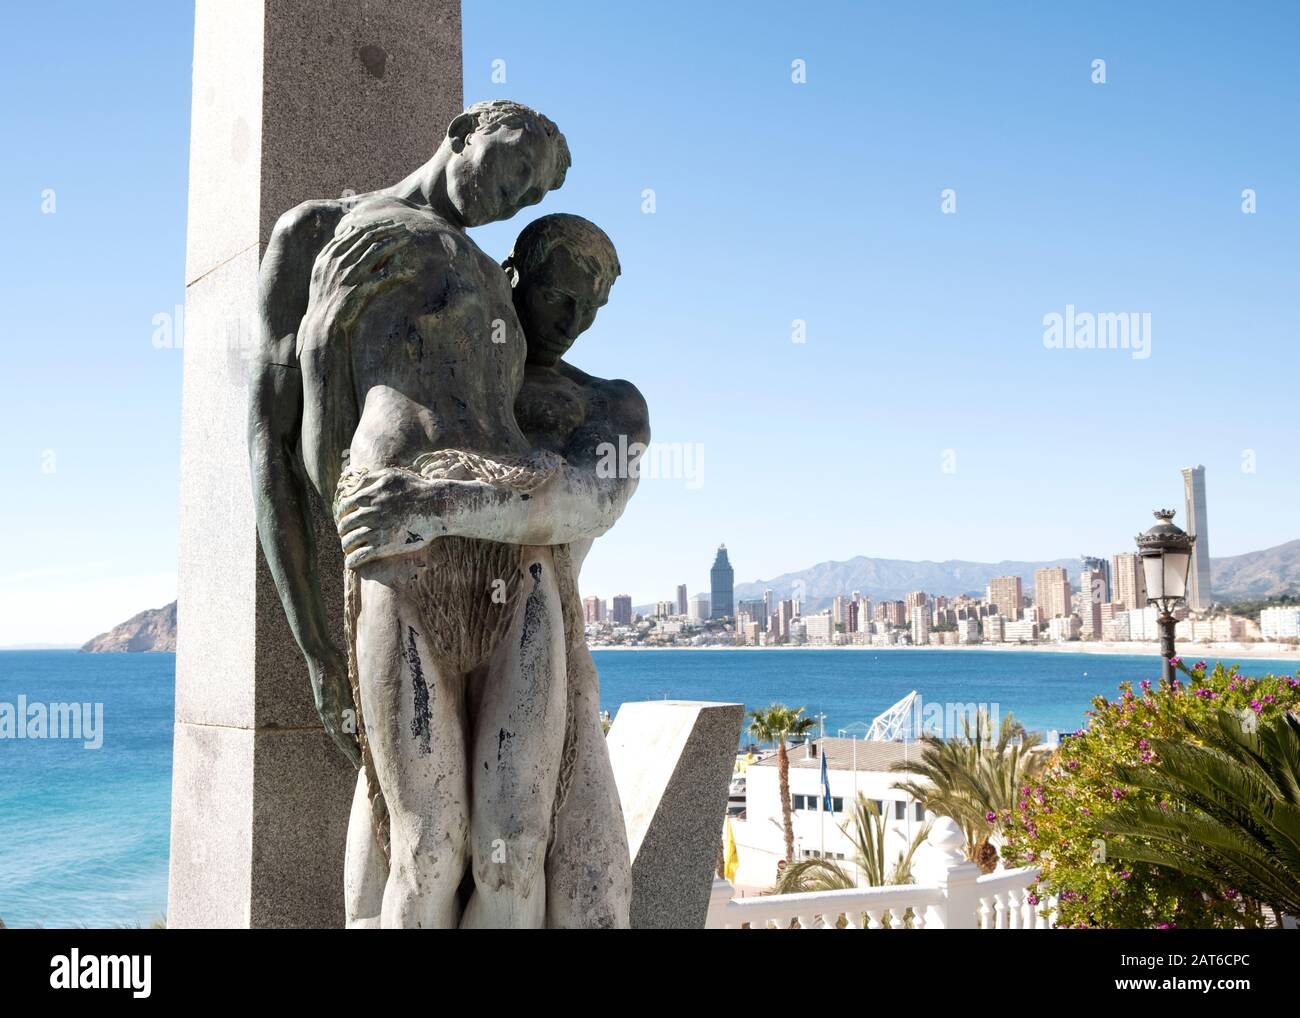 Tributo ai morti in mare figura umana scultura con Playa de Poniente spiaggia sul retro (Benidorm, Marina Baixa, Costa Blanca, Alicante, Spagna) Foto Stock